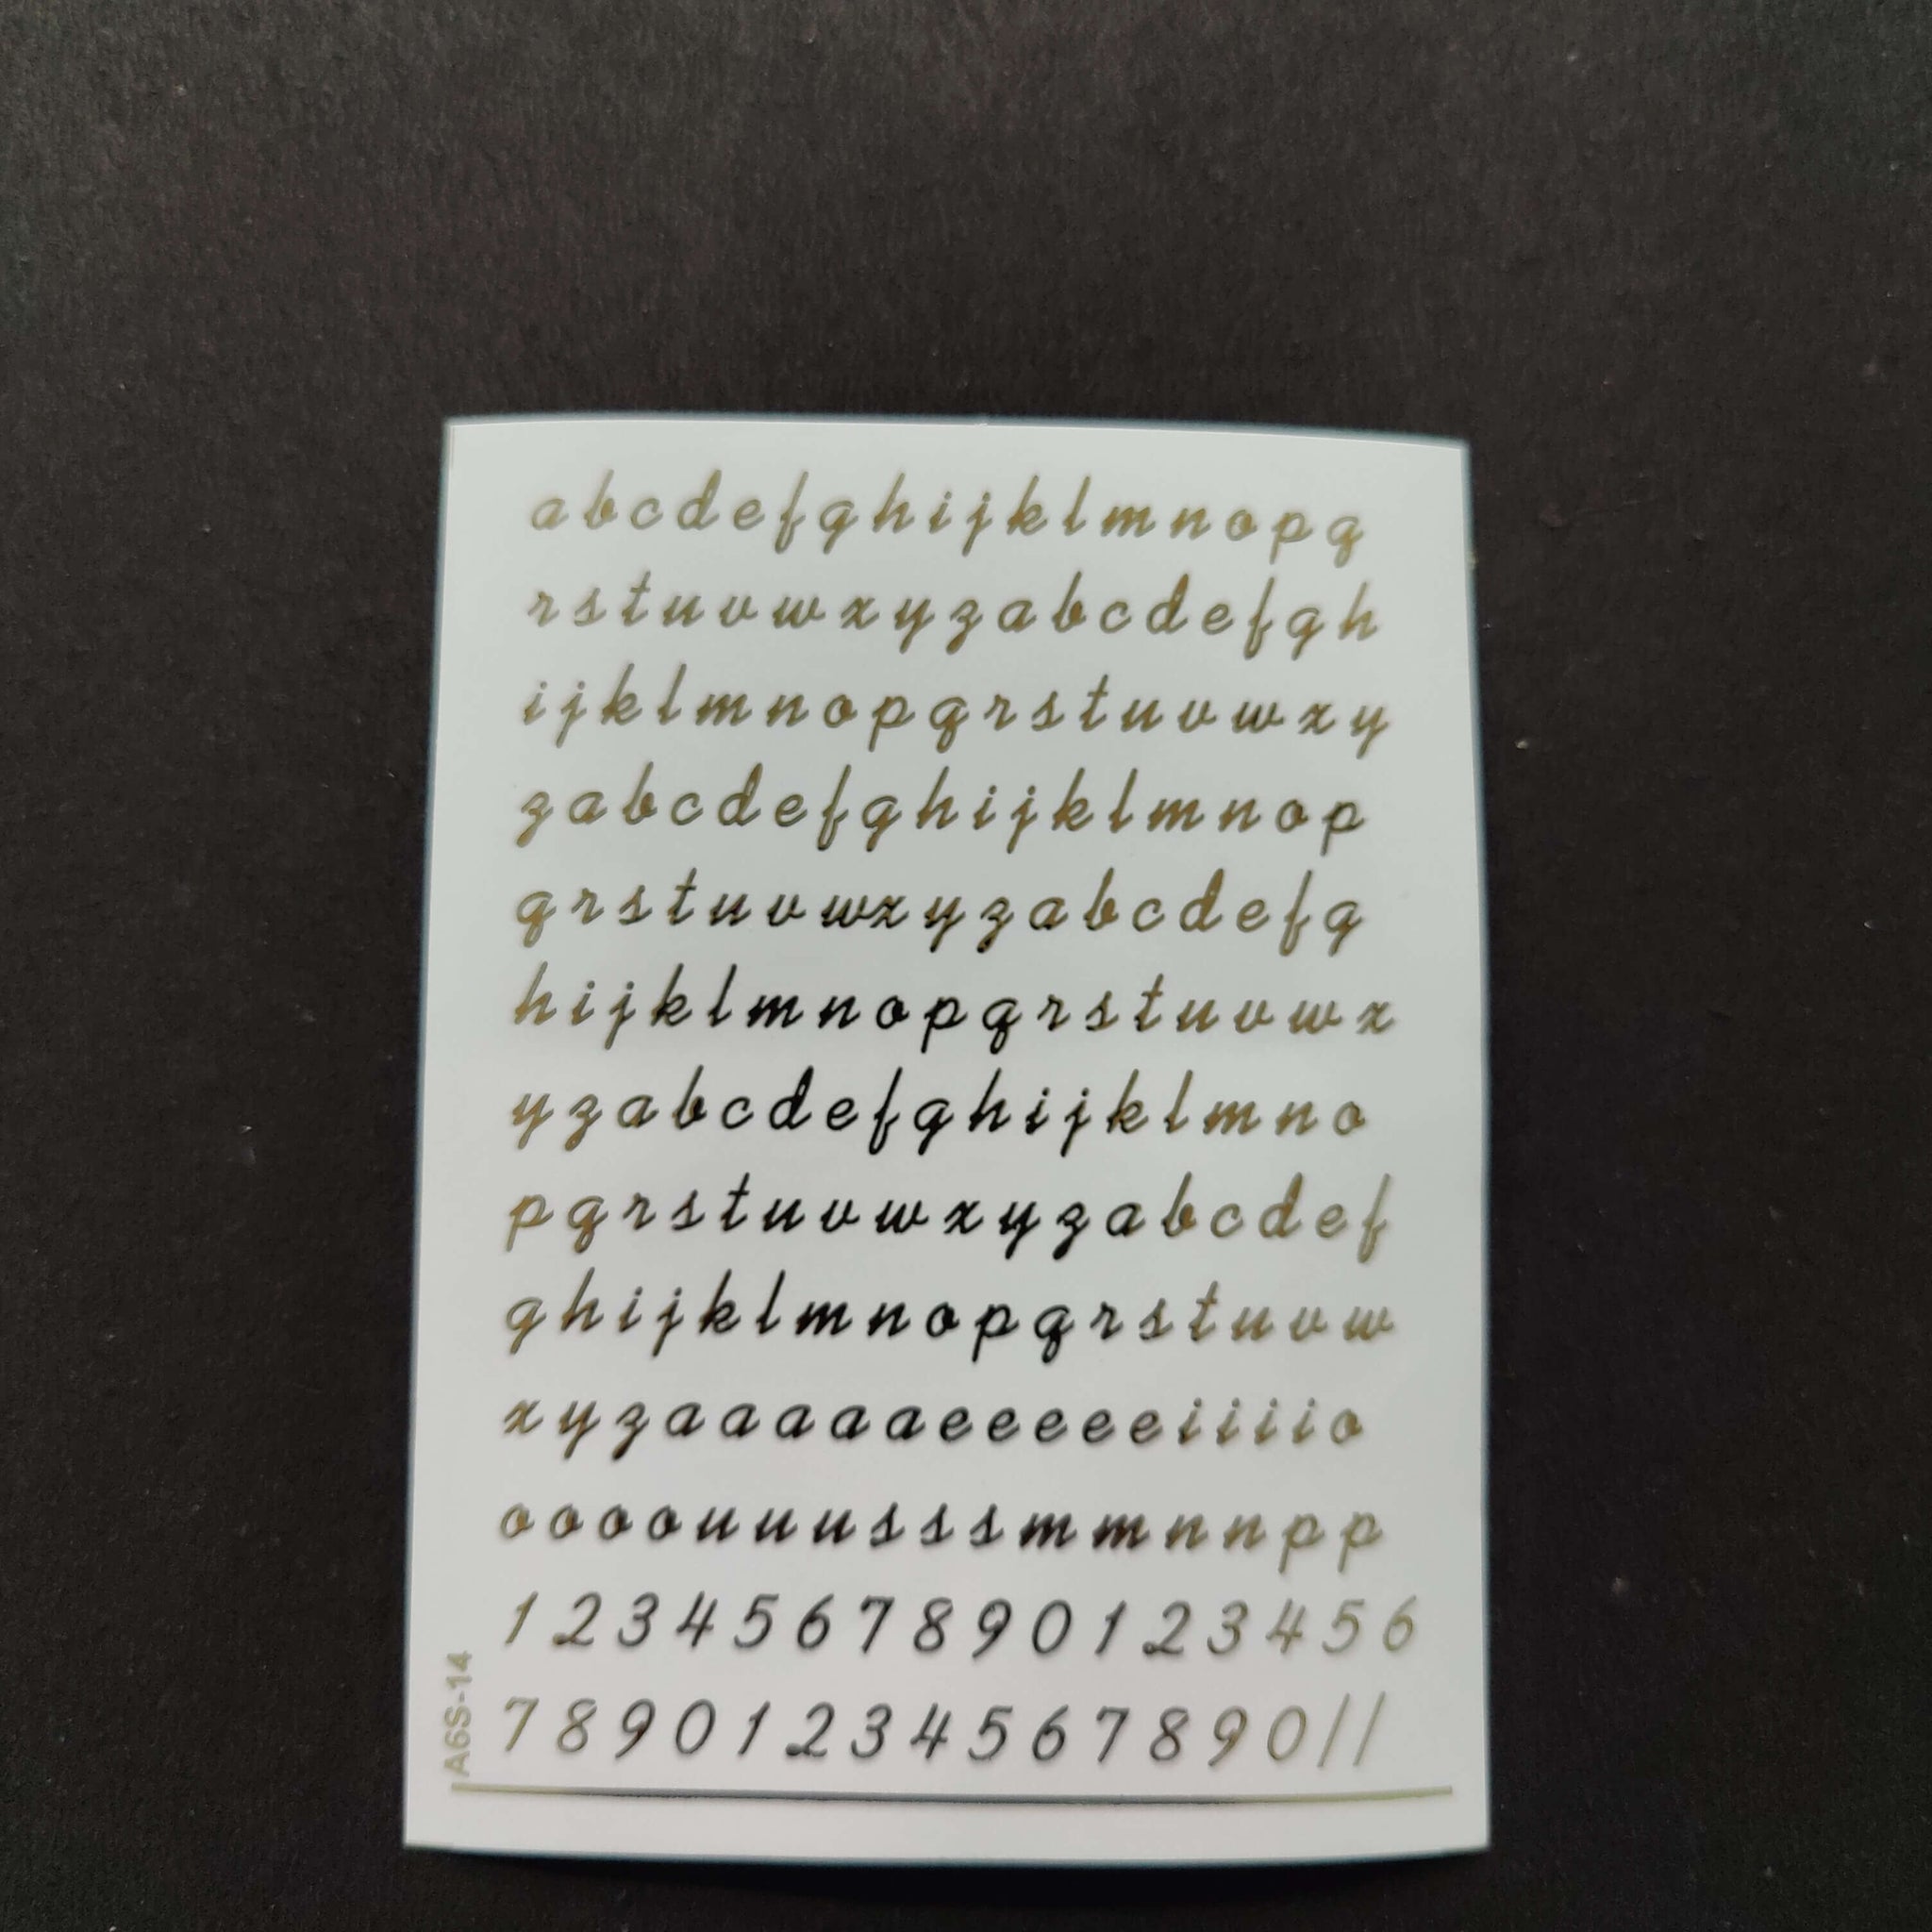 Resin Emboss Sticker Sheet A6 size - 14